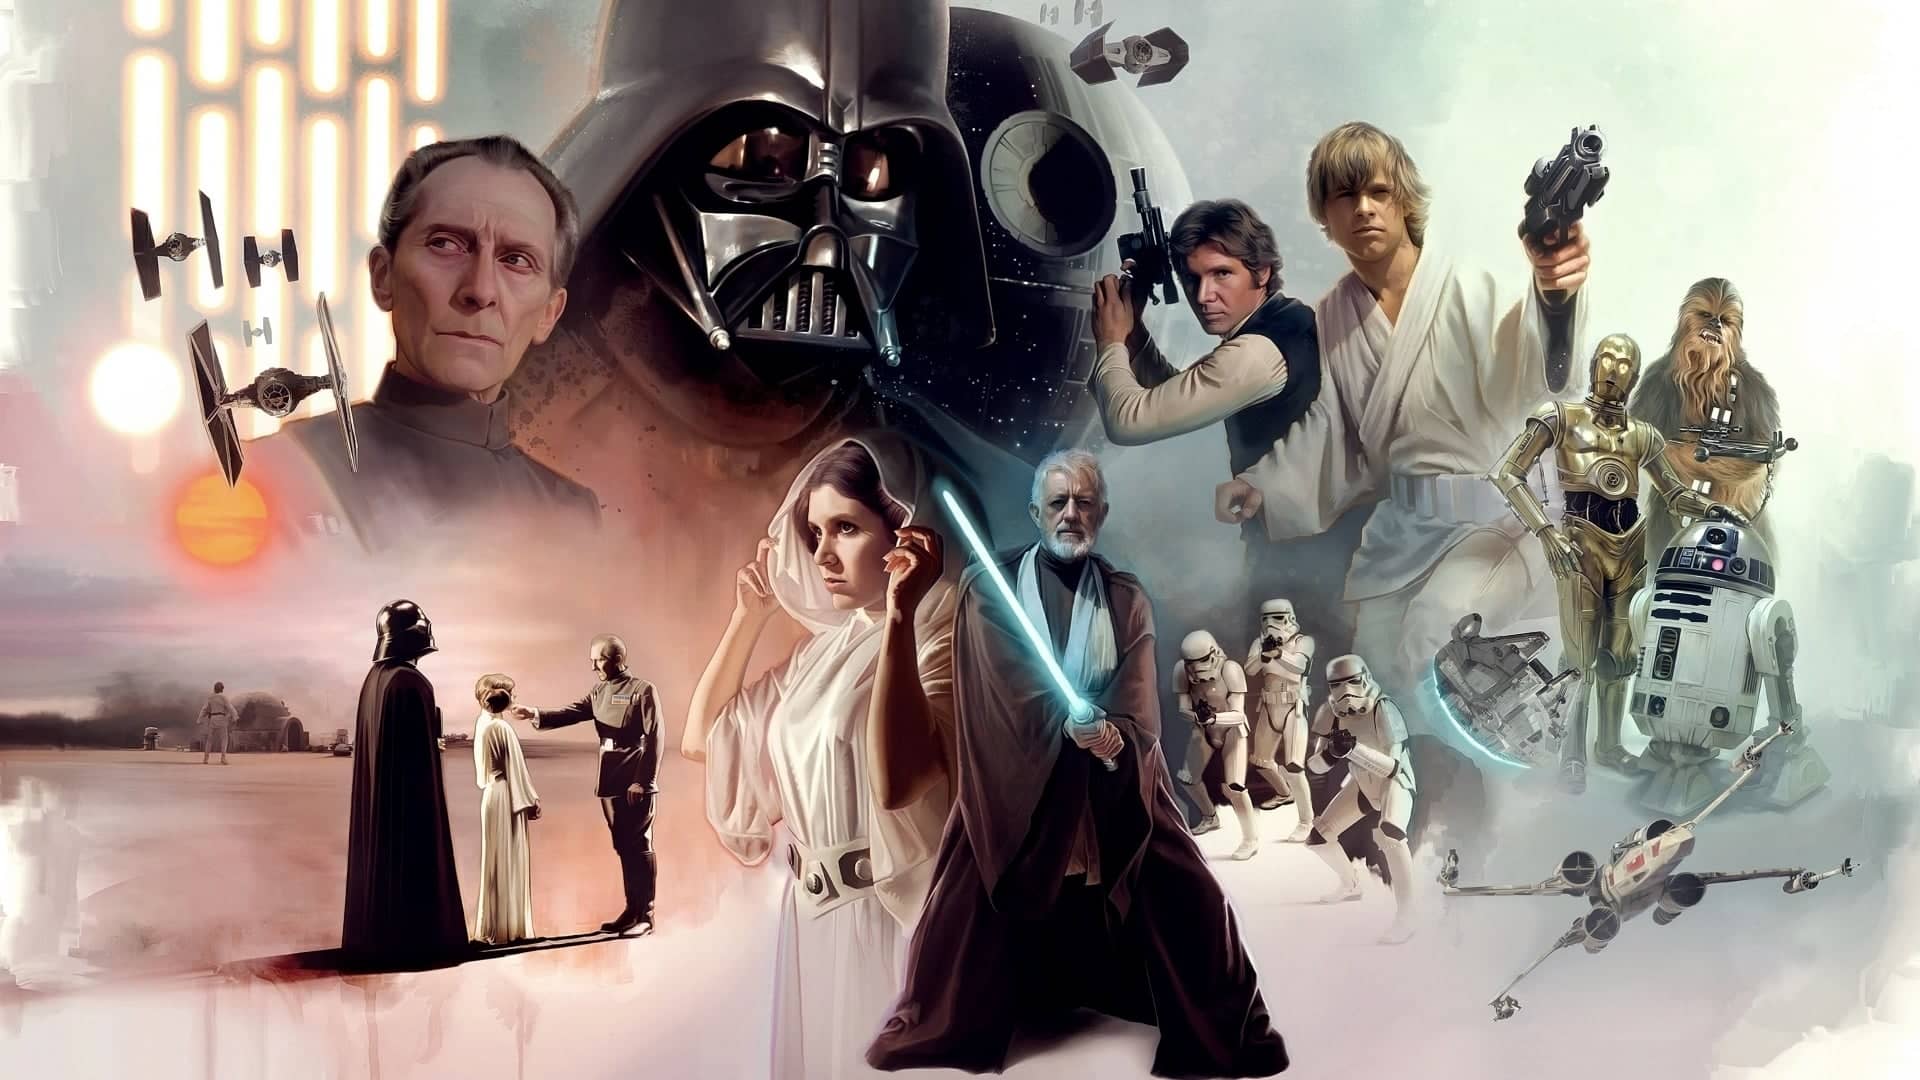 Ilustración promocional de los personajes la triología original de Star Wars, toda la saga esta disponible para ver en disney plus